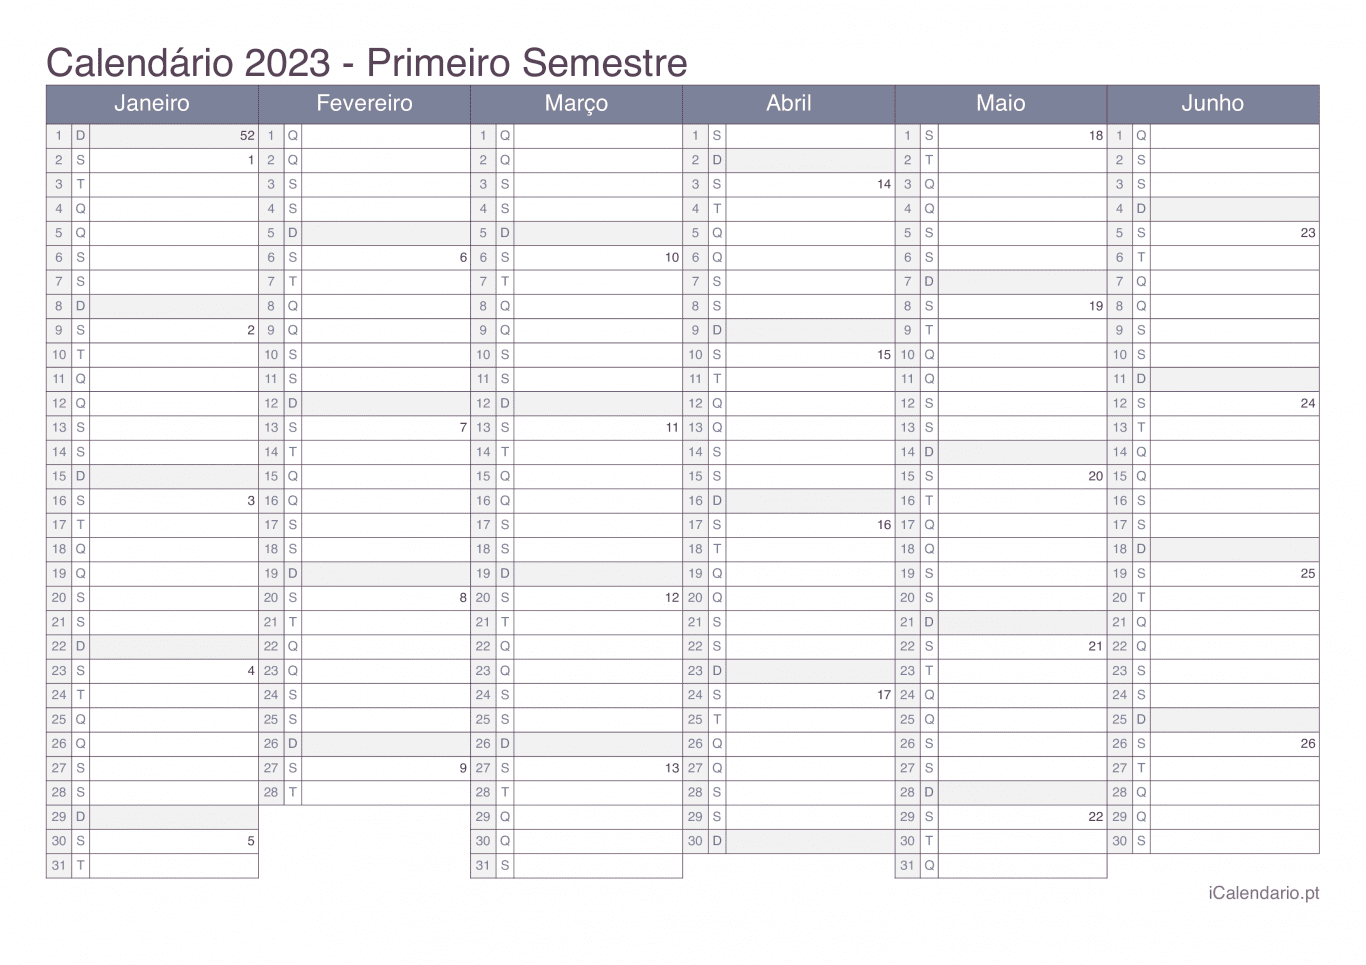 Calendário por semestre com números da semana 2023 - Office